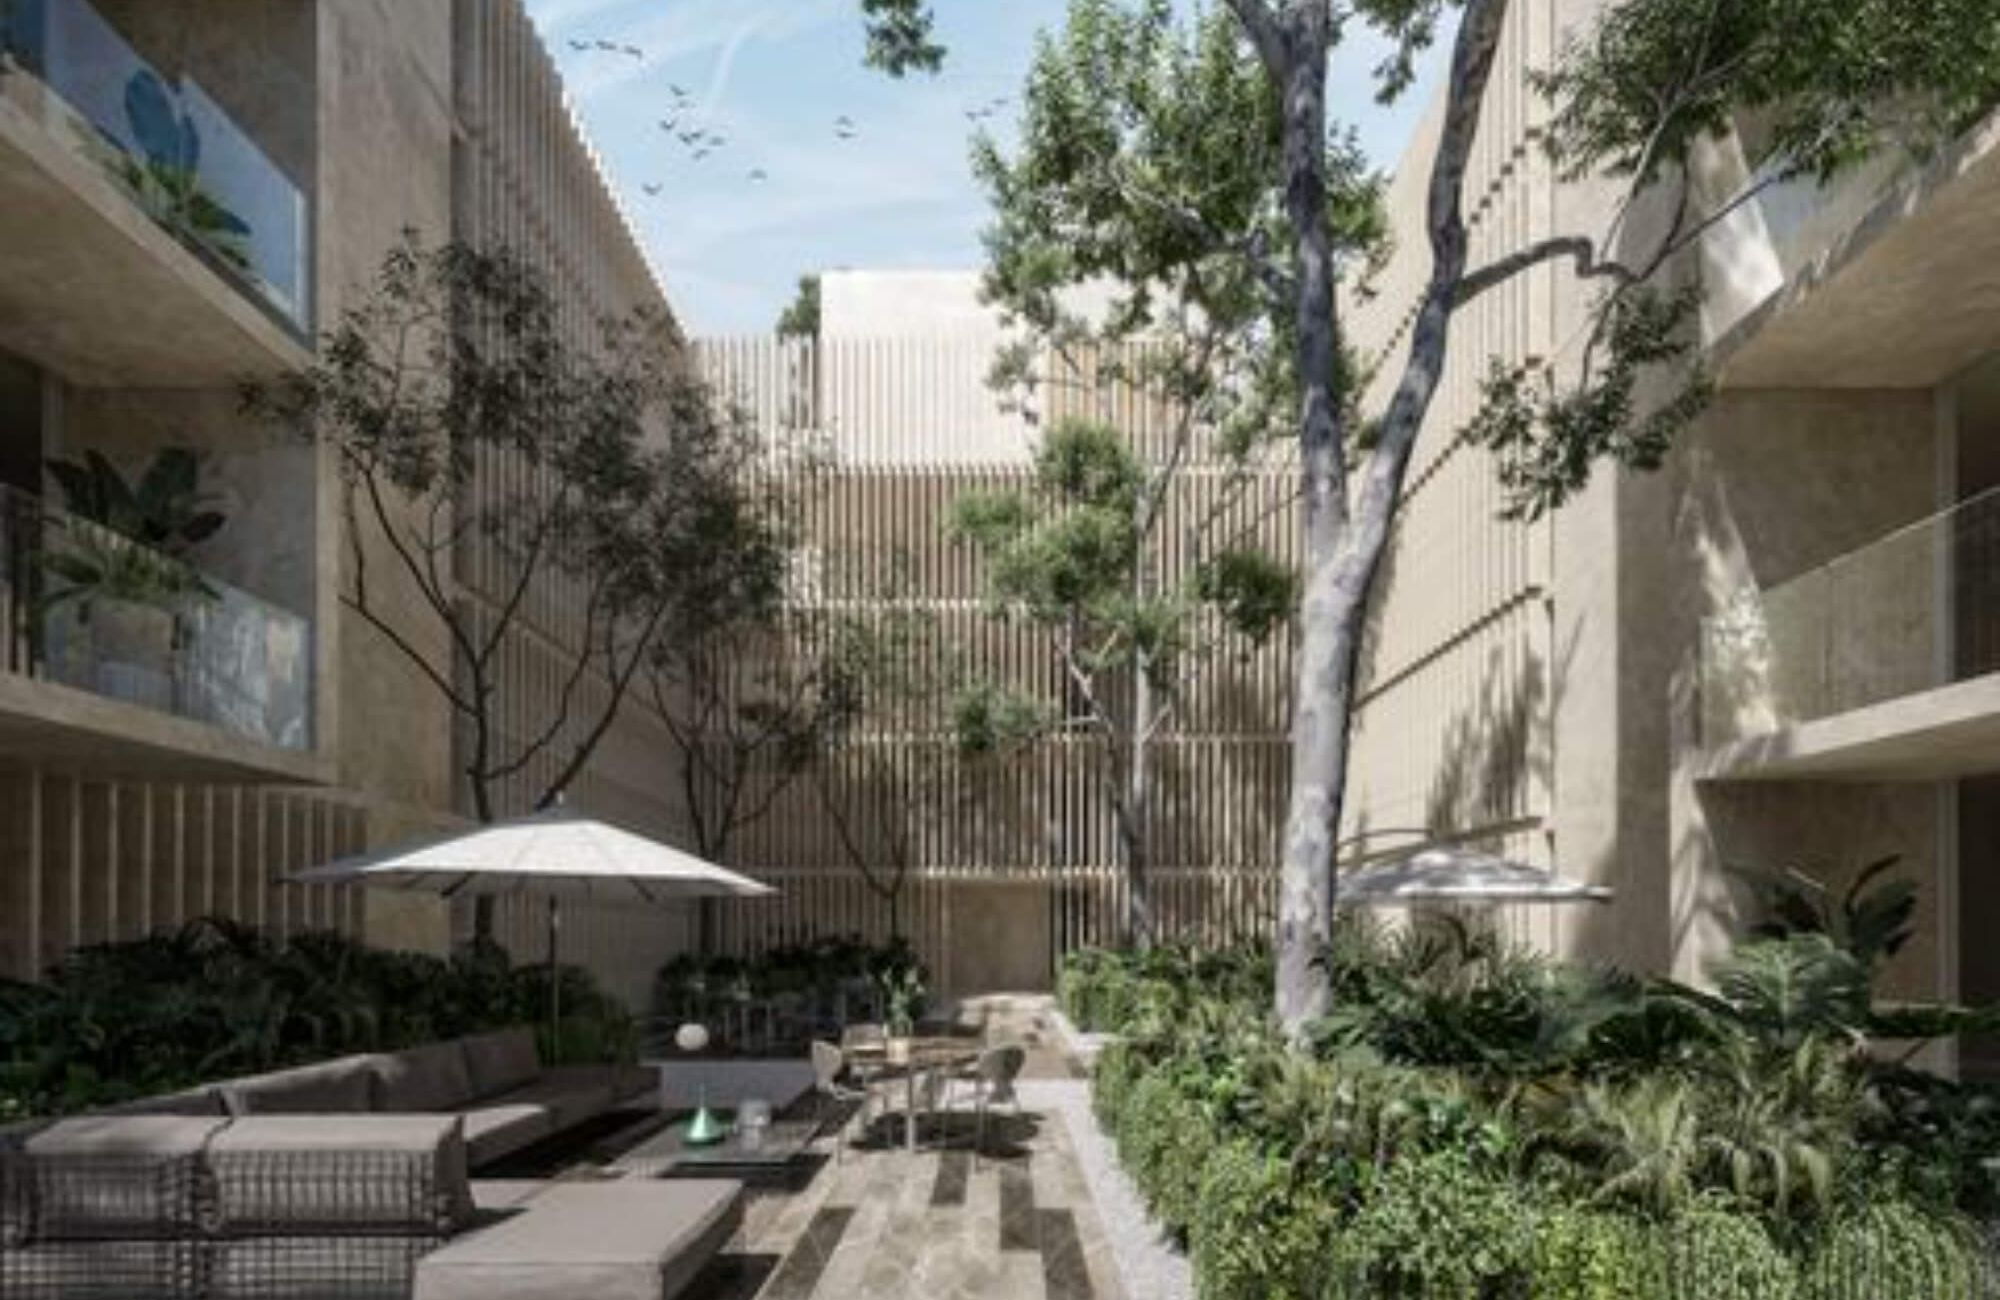 Condominium with private garden and terrace for sale in Merida Centro.